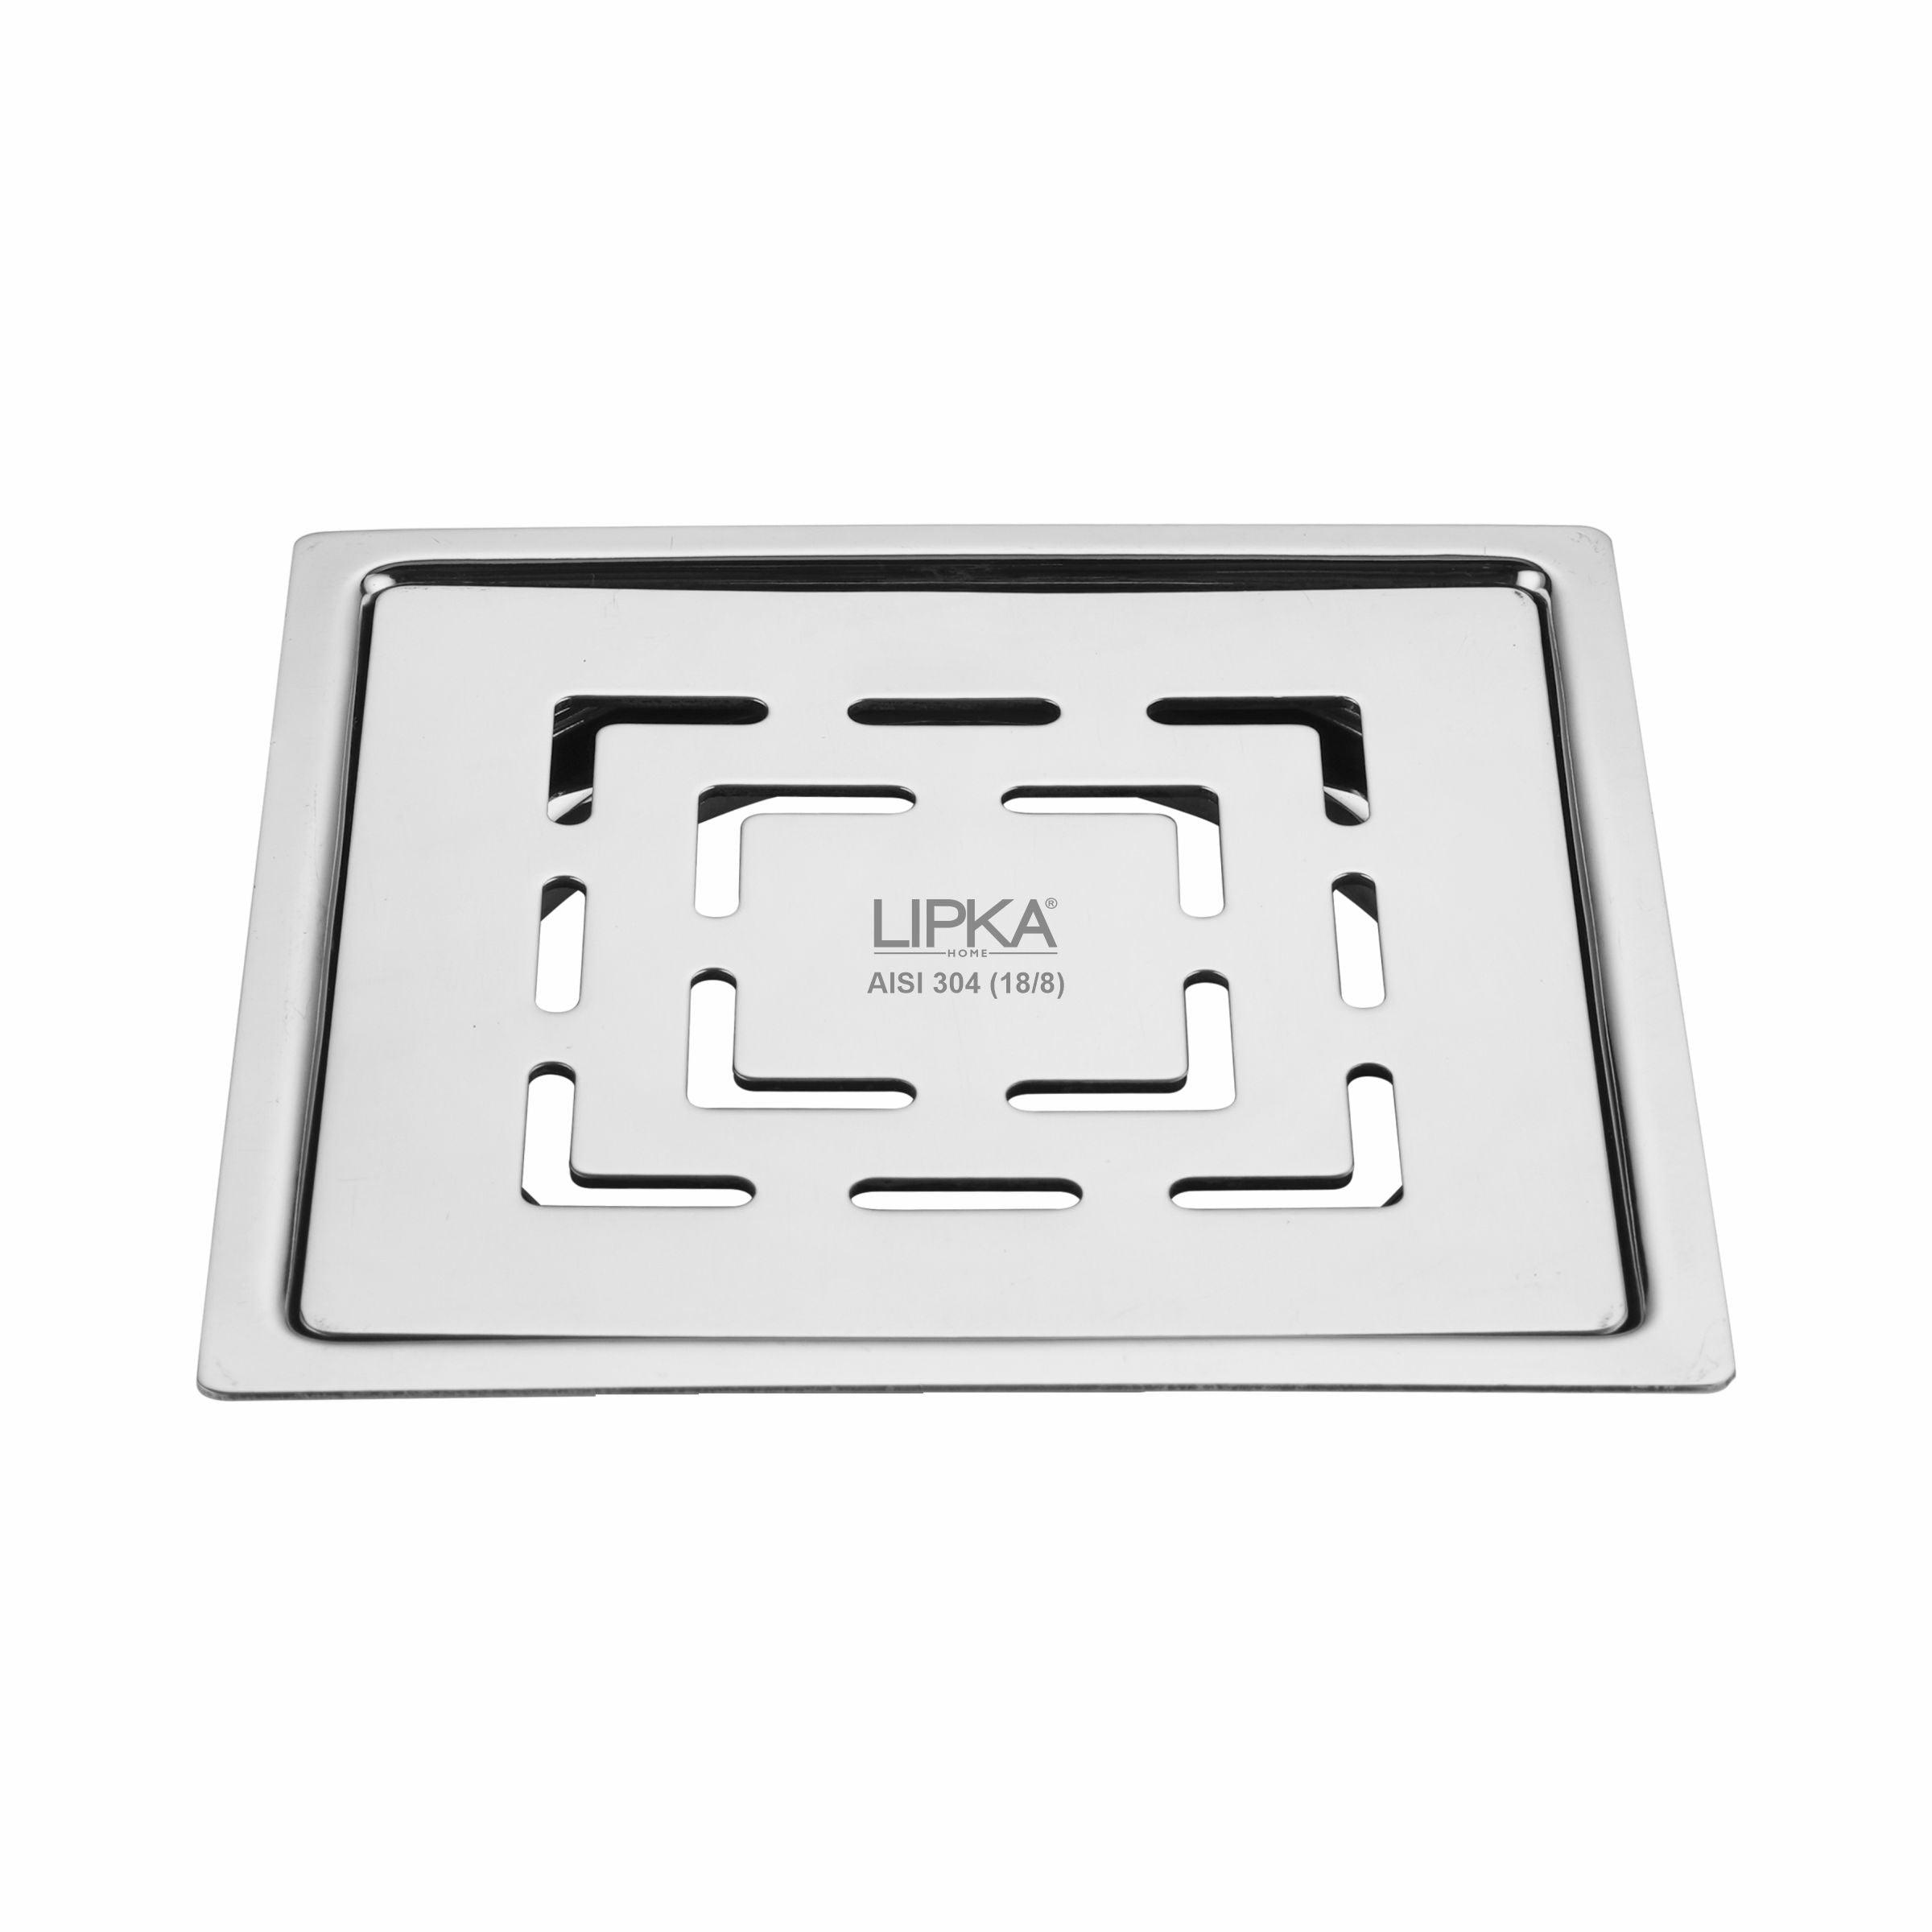 Orange Exclusive Square Flat Cut Floor Drain (5 x 5 Inches) - LIPKA